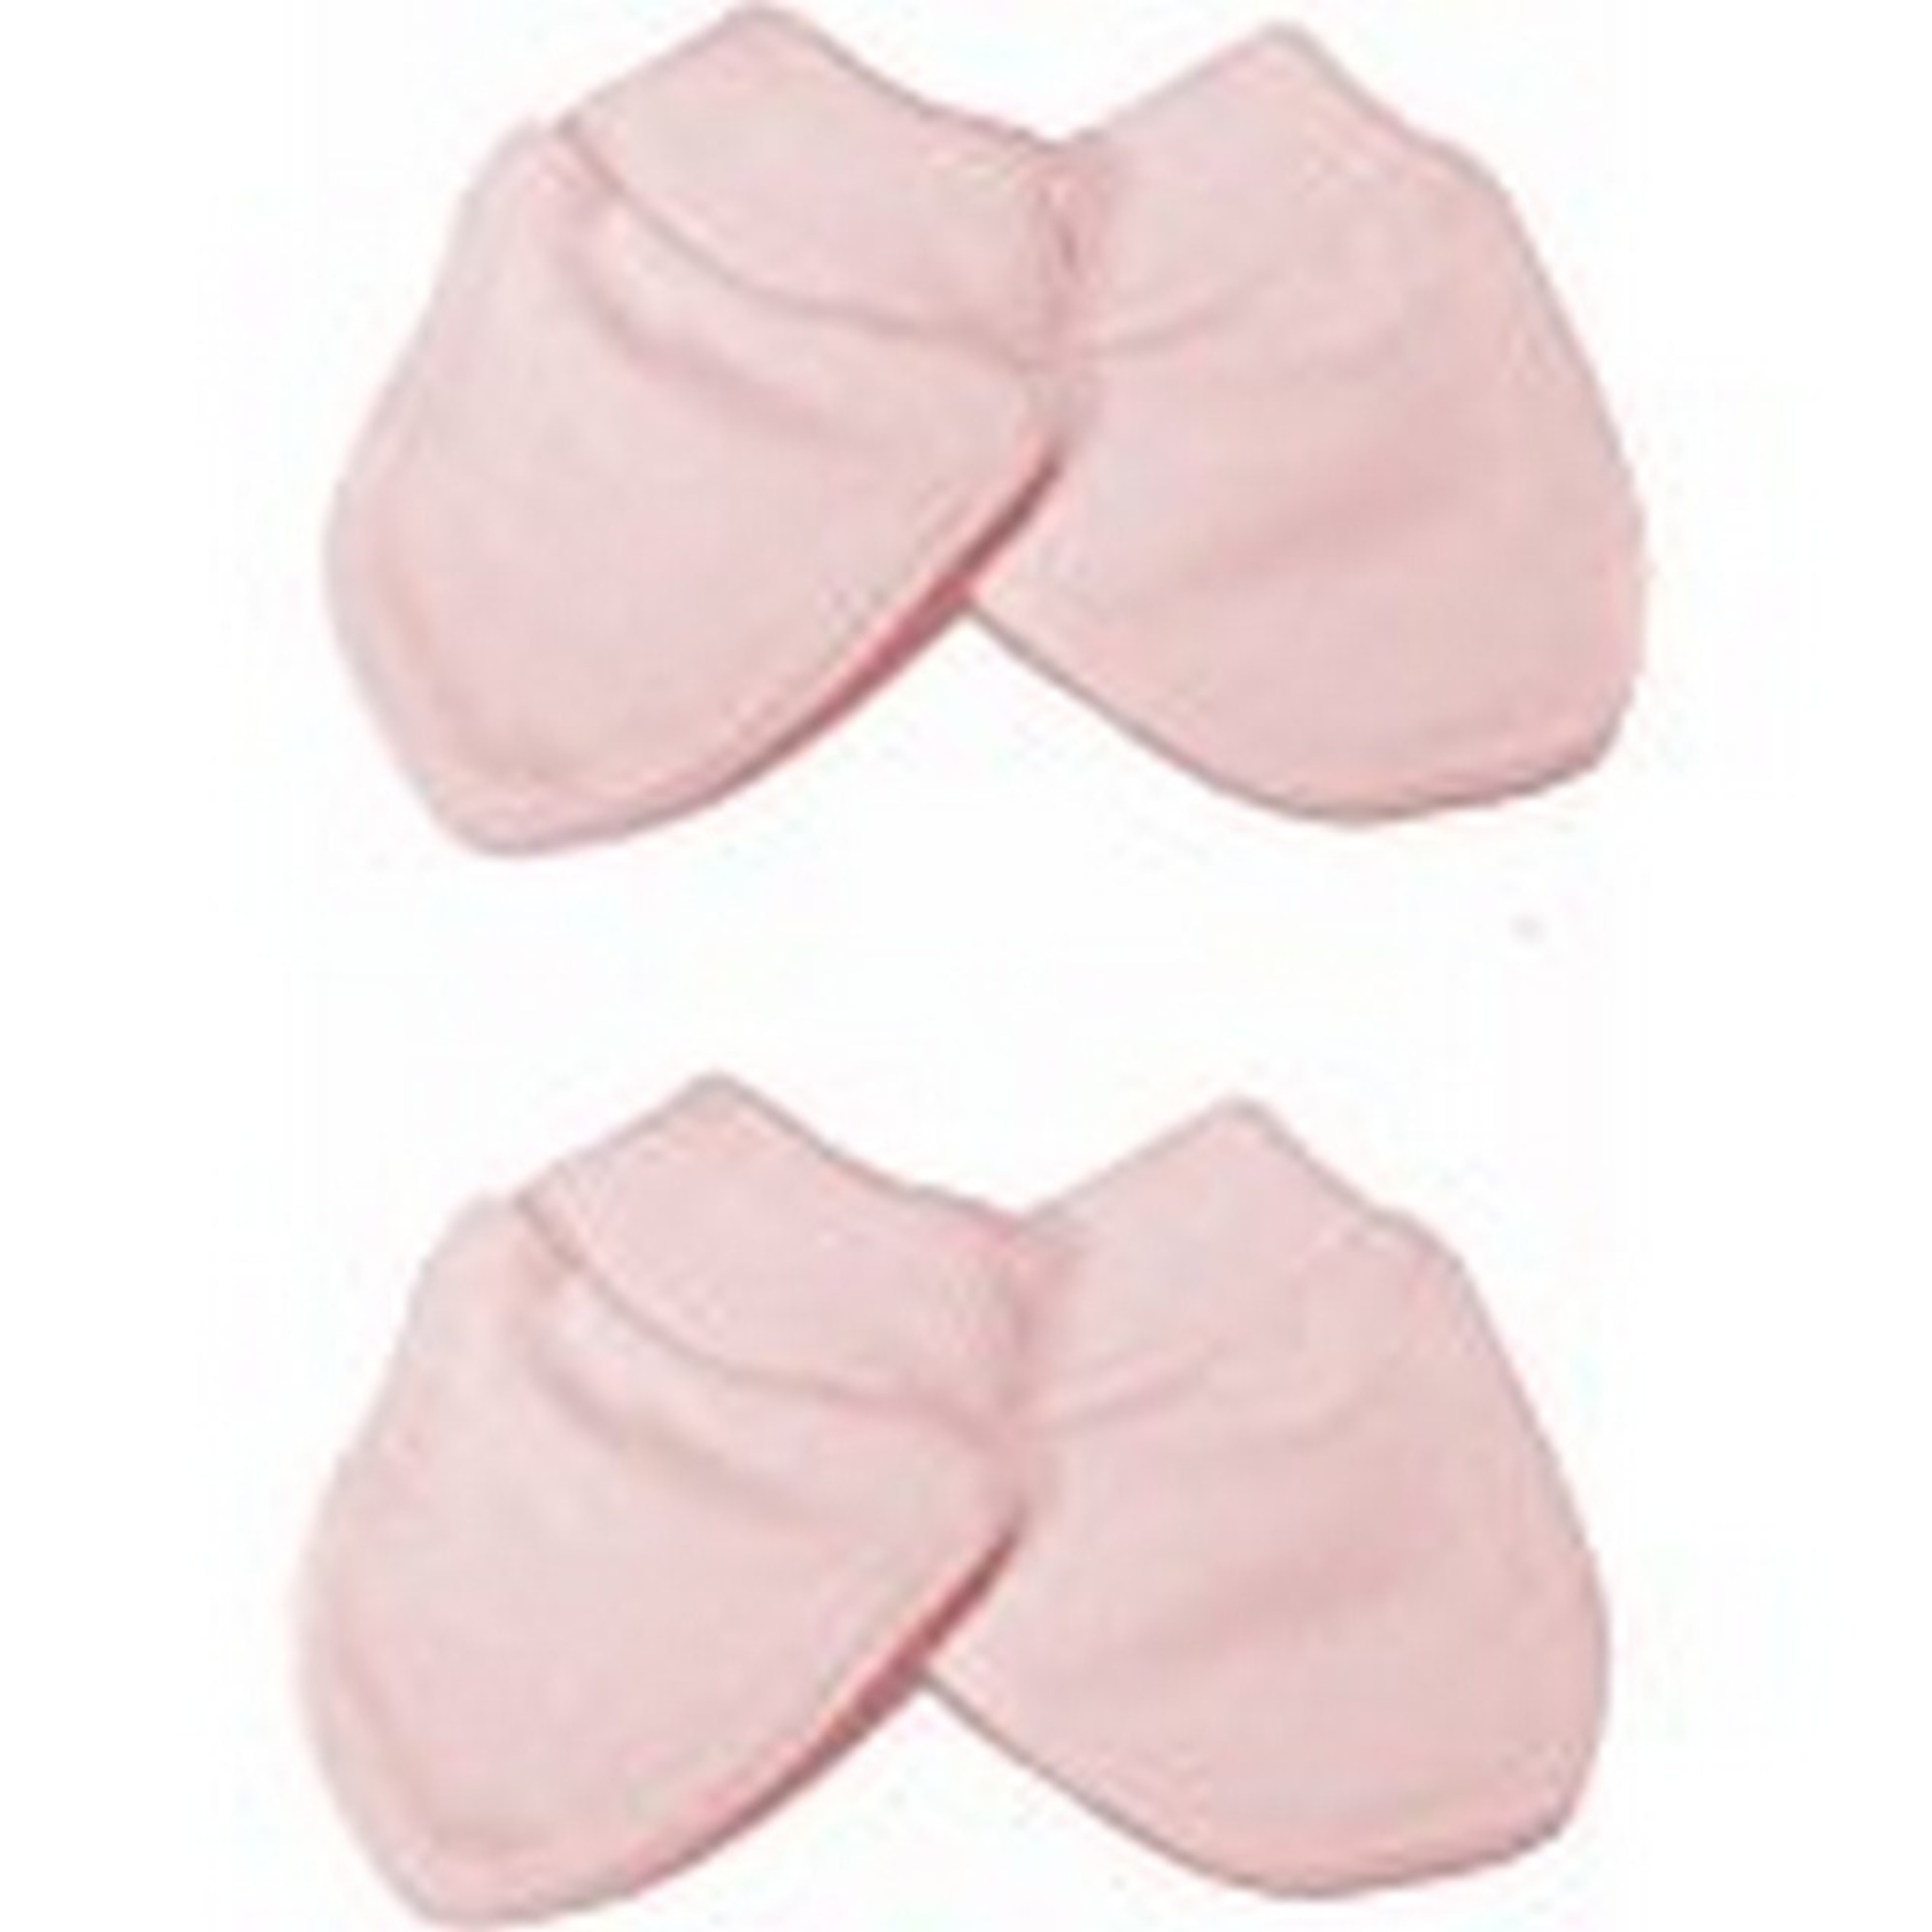 Manoplas Elásticas 100% Algodón Para Recién Nacido (Pack De 2 Pares) Universal Textiles (Rosa) - rosa  MKP